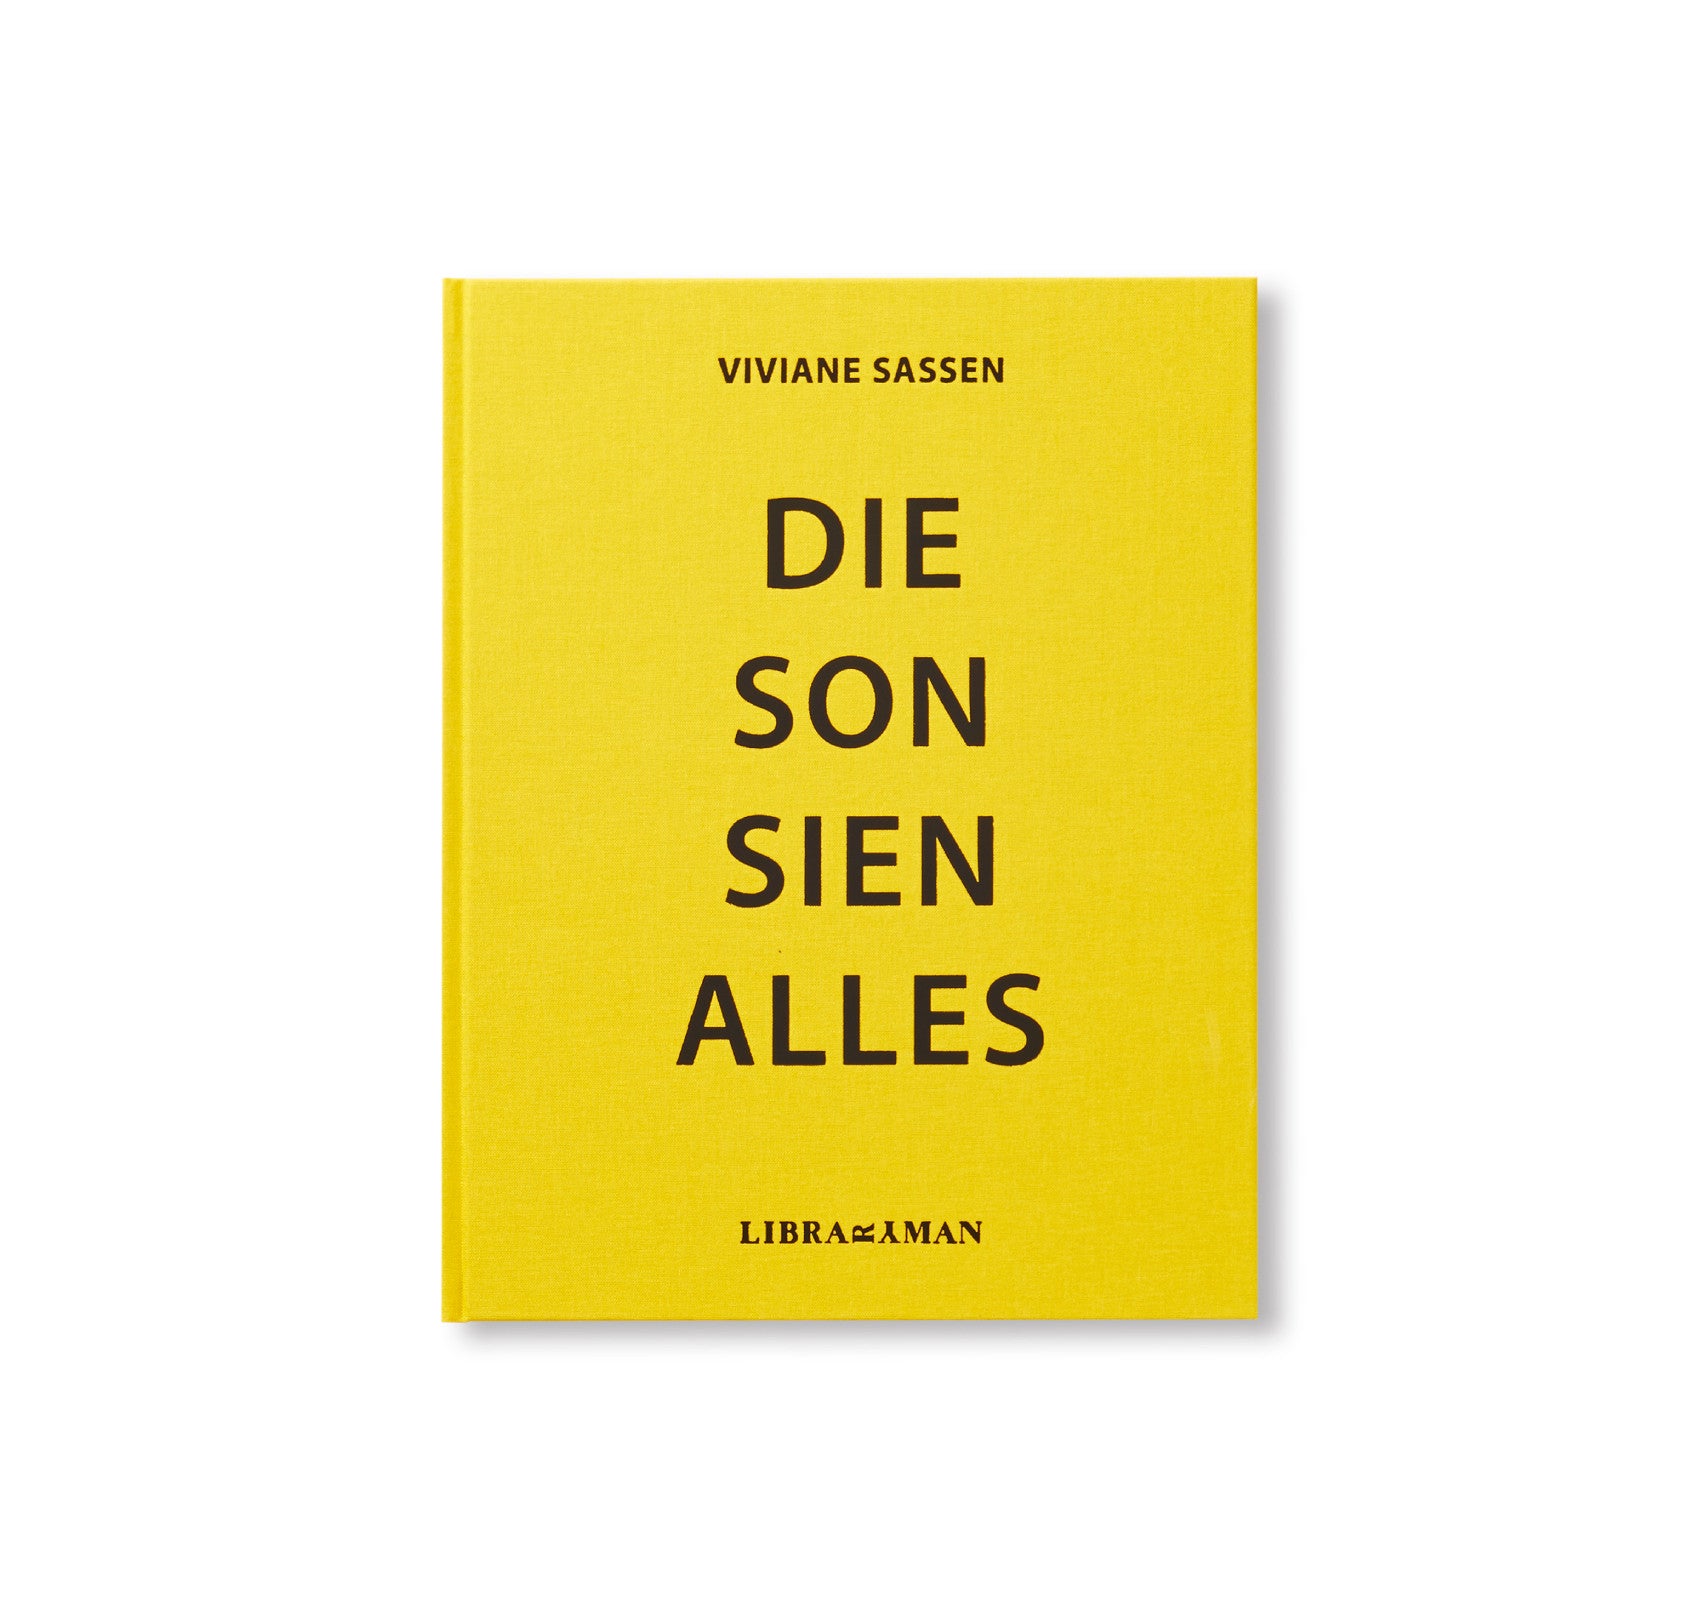 DIE SON SIEN ALLES by Viviane Sassen [SECOND EDITION]